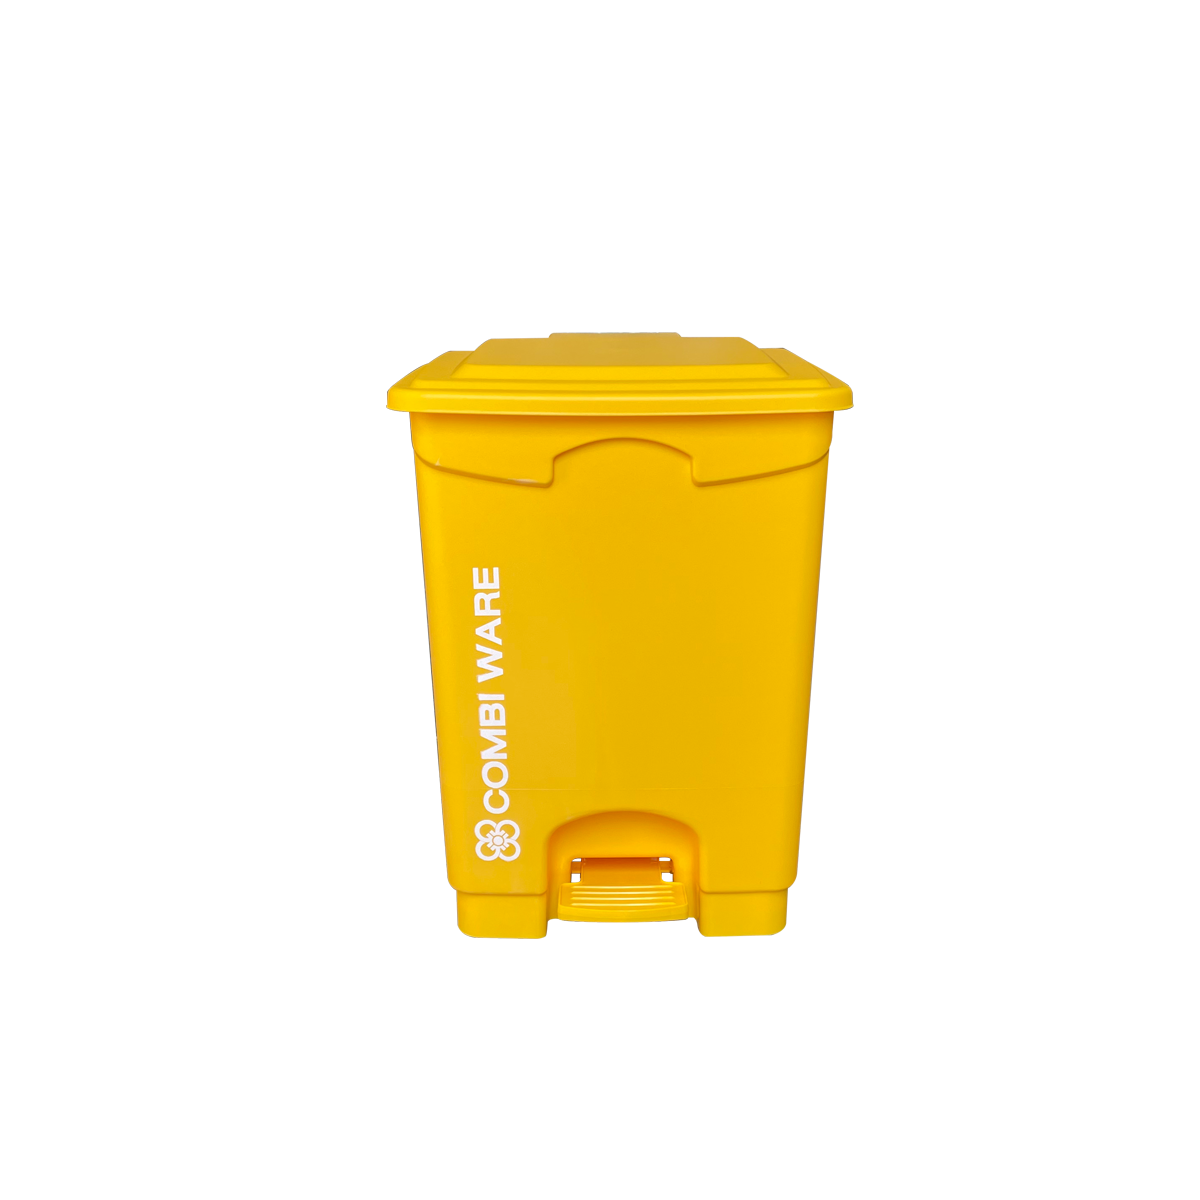 ถังขยะพลาสติก ขนาด 20 ลิตร แบบมีเท้าเหยียบ สีเหลือง